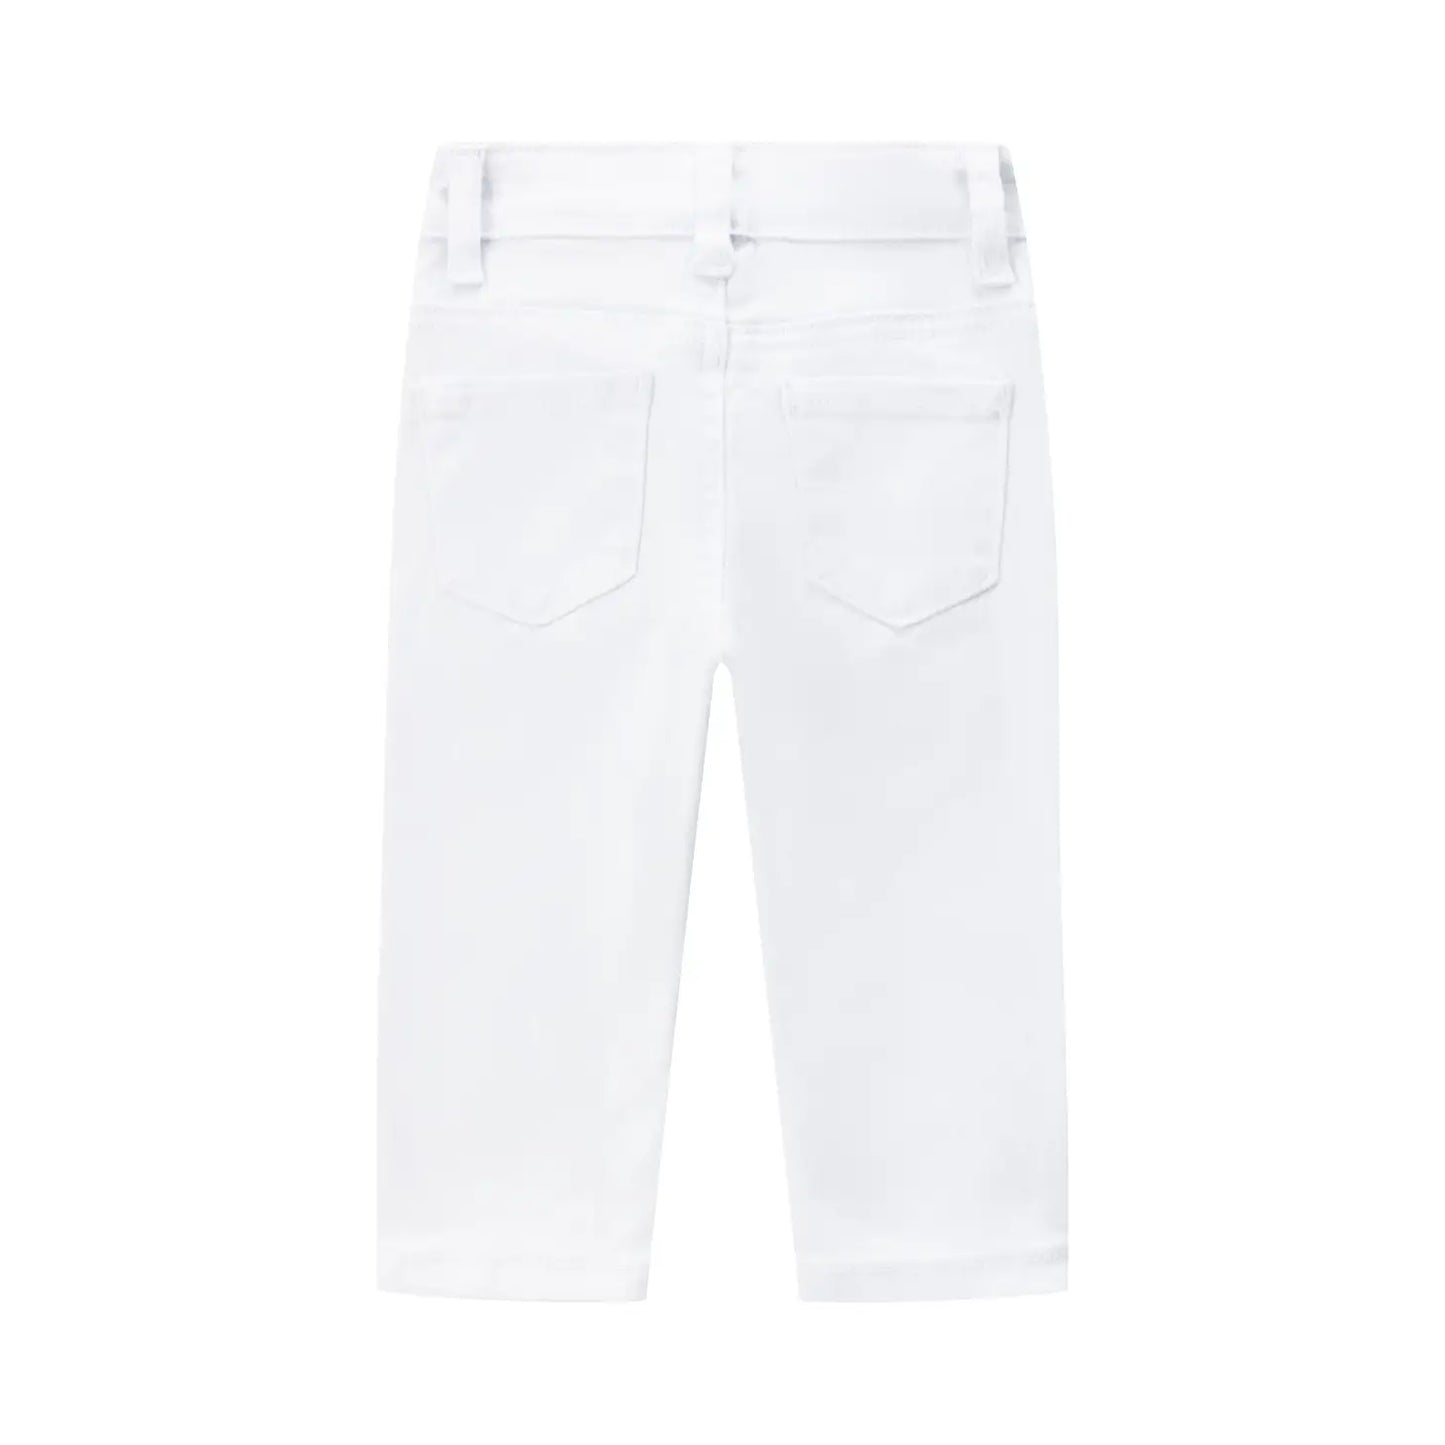 Witte jeans met 5 zakken